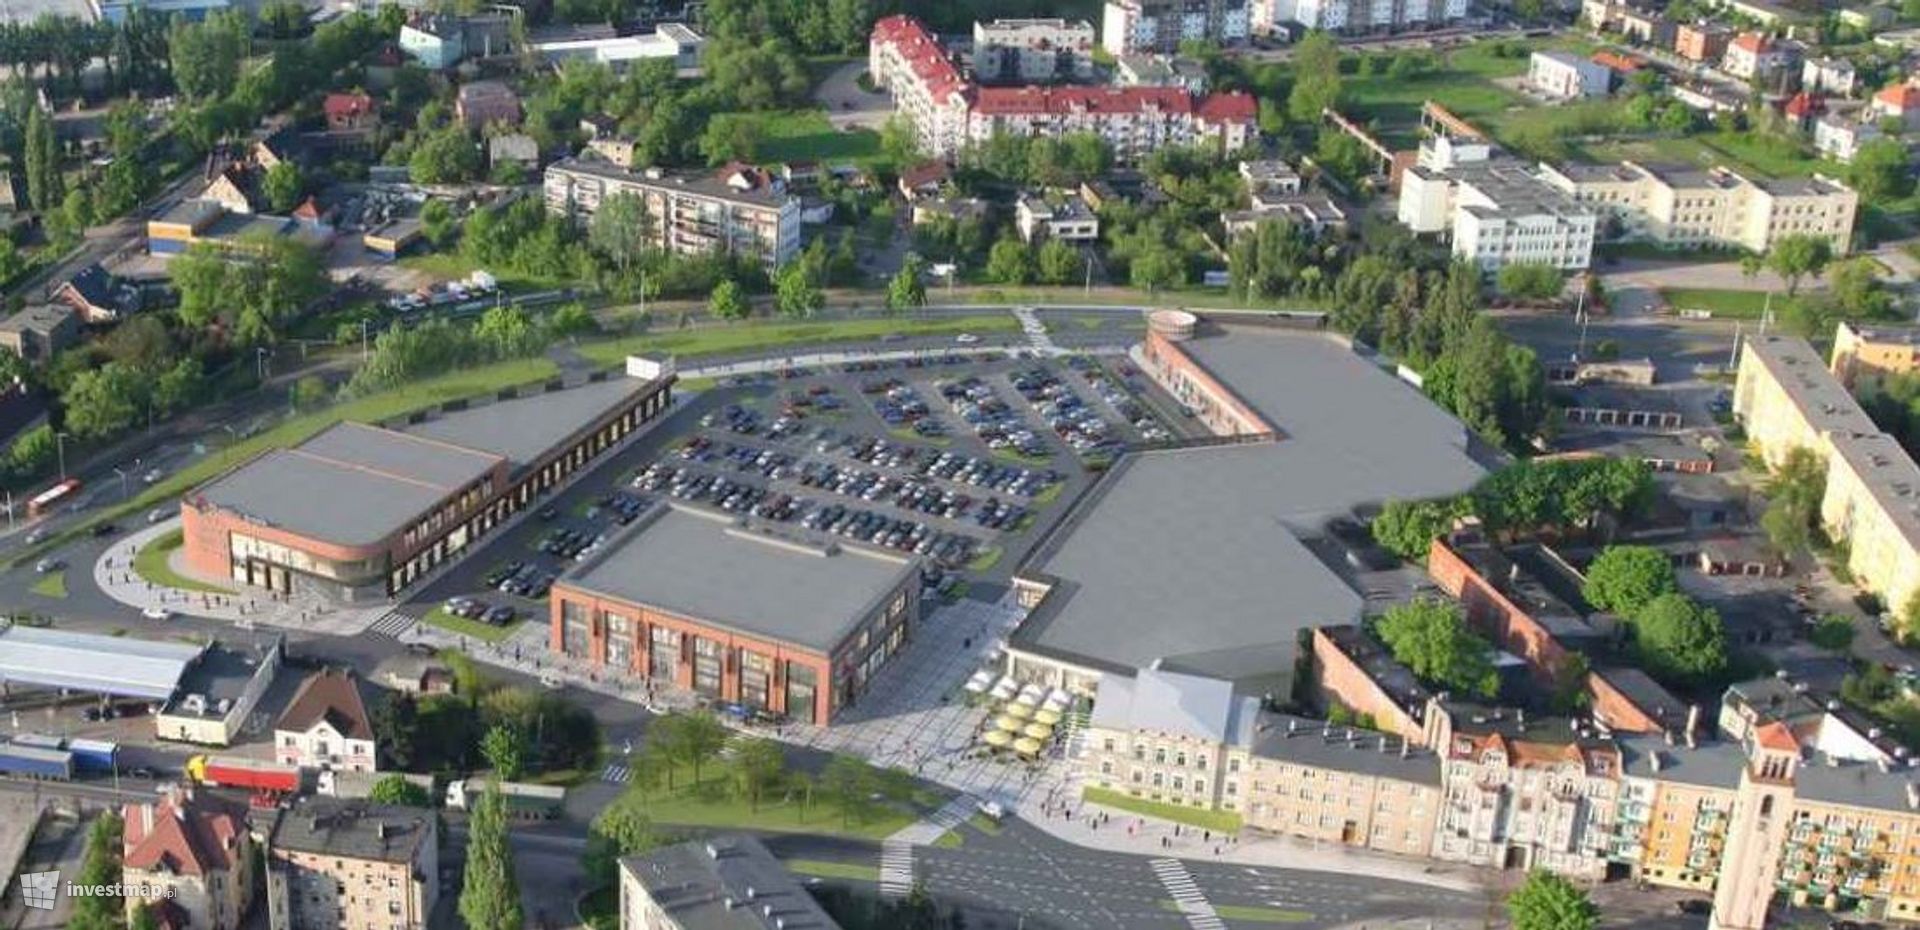 Ruszyła komercjalizacja Parku Handlowego Multibox w Ostrowie Wielkopolskim